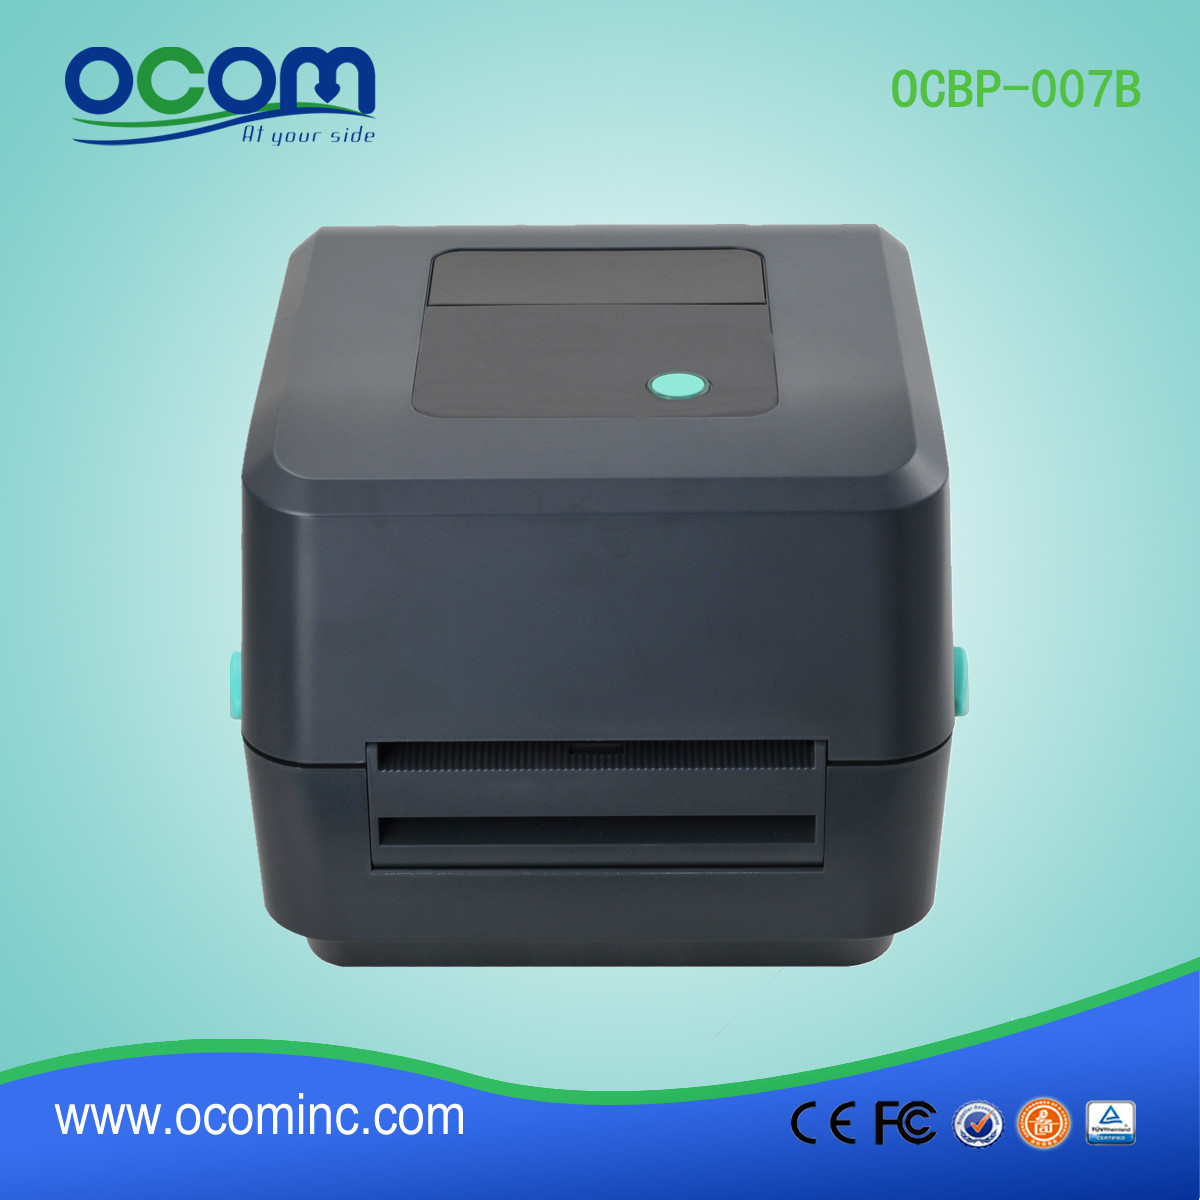 New Model OCBP-007B Direct Thermal Barcode Label Printer